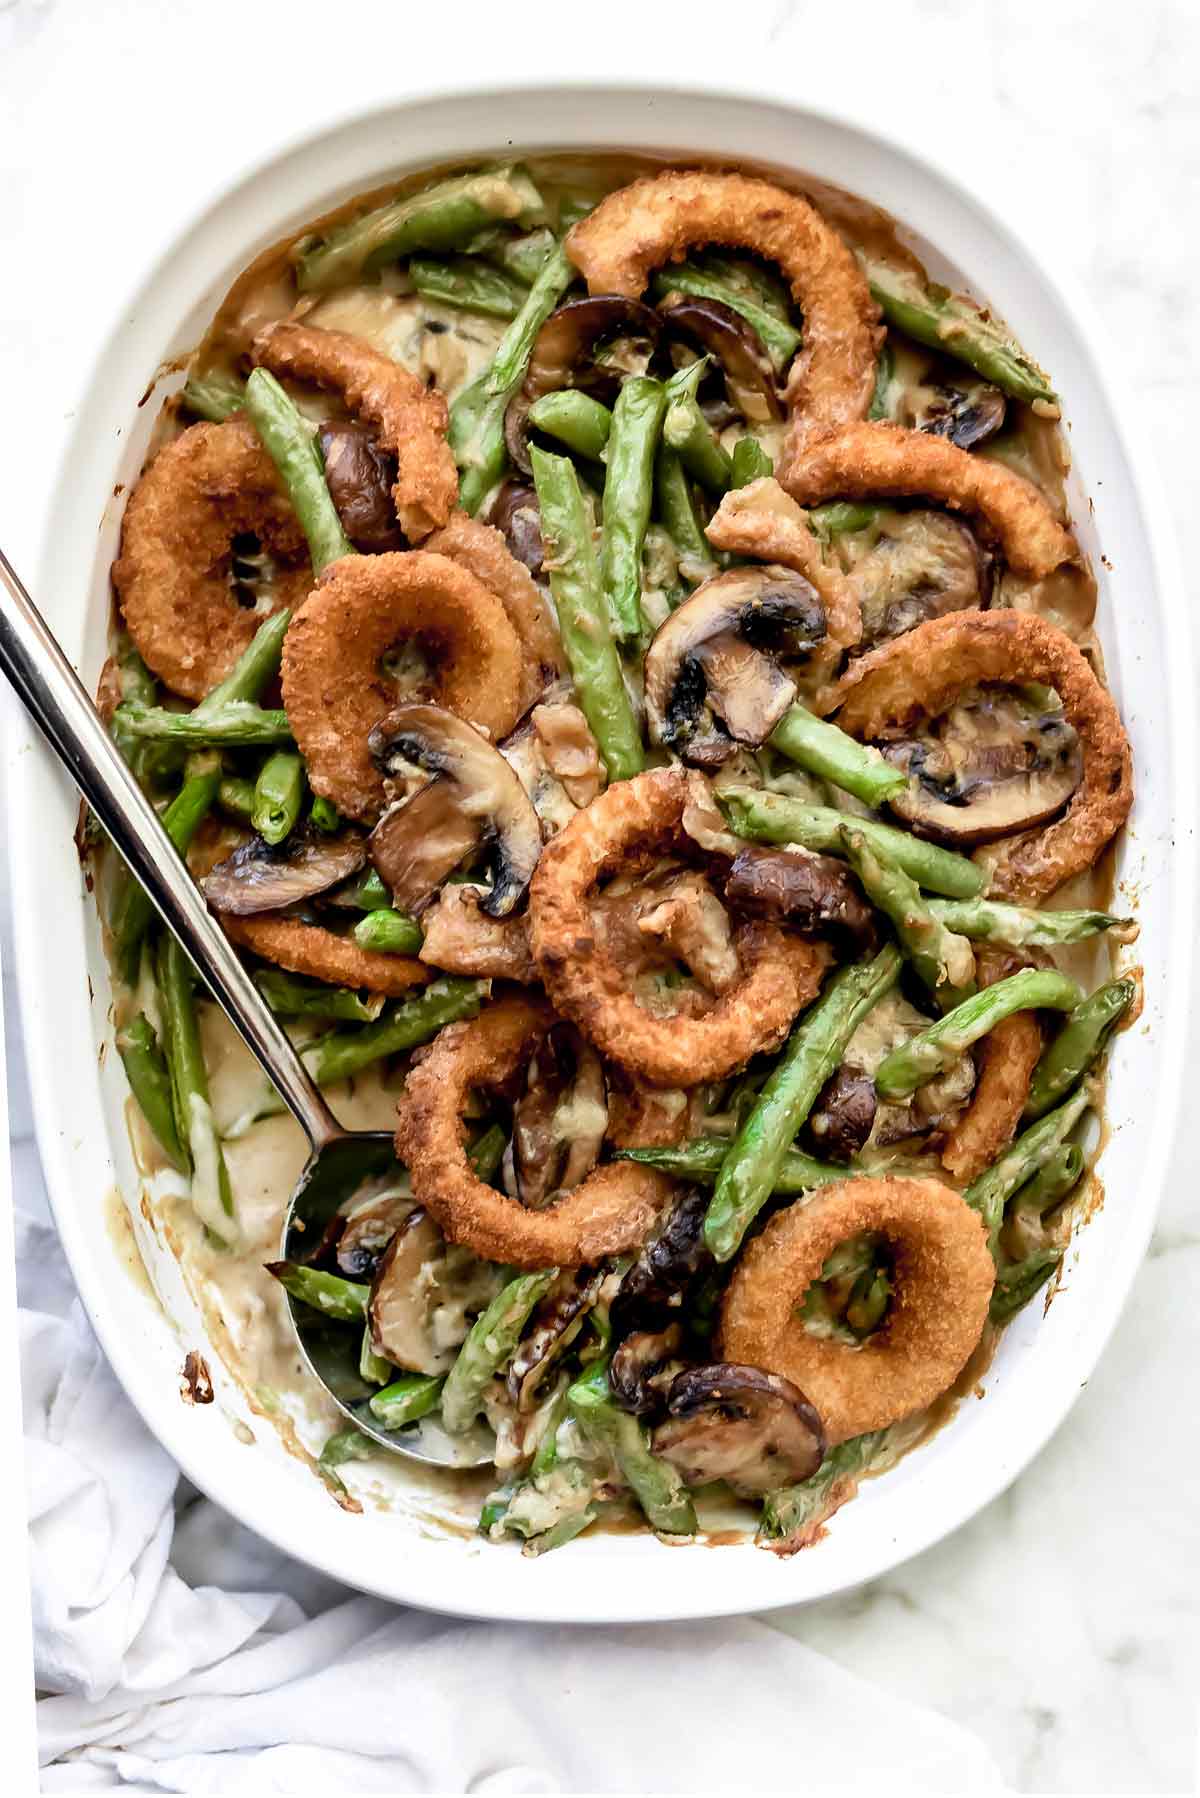 Casserole de haricots verts avec rondelles d'oignon | foodiecrush.com #recipes #sidedish #beans #casserole